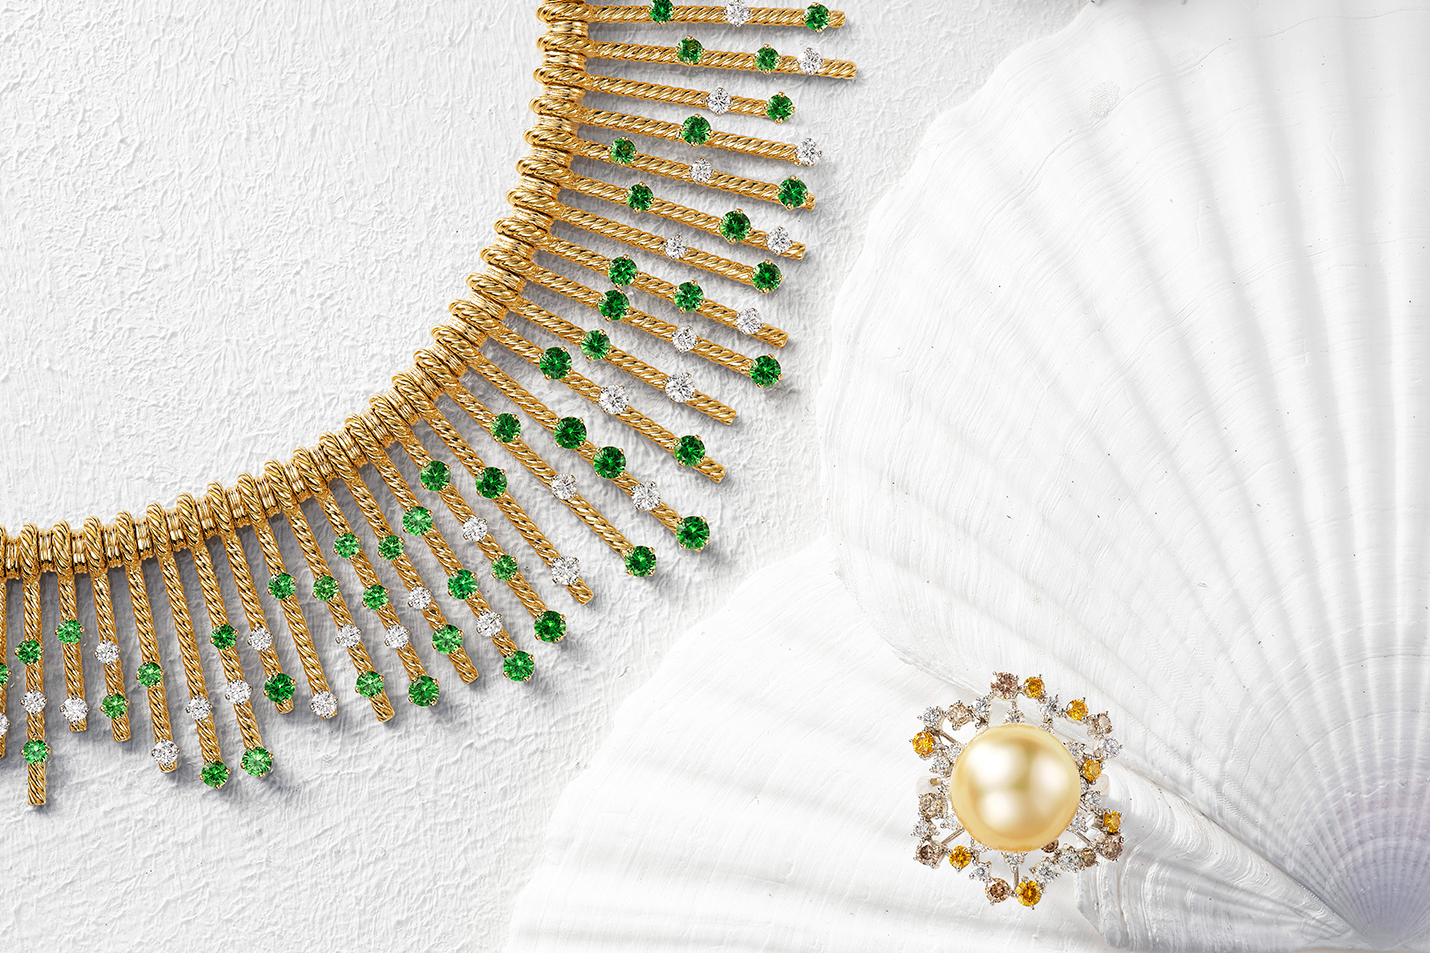 Tiffany & Co. Schlumberger 高級珠寶系列 18K 金與鉑金沙弗萊石和鑽石流蘇項鍊。Mikimoto 頂級珠寶系列香檳金色南洋珍珠鑽戒。